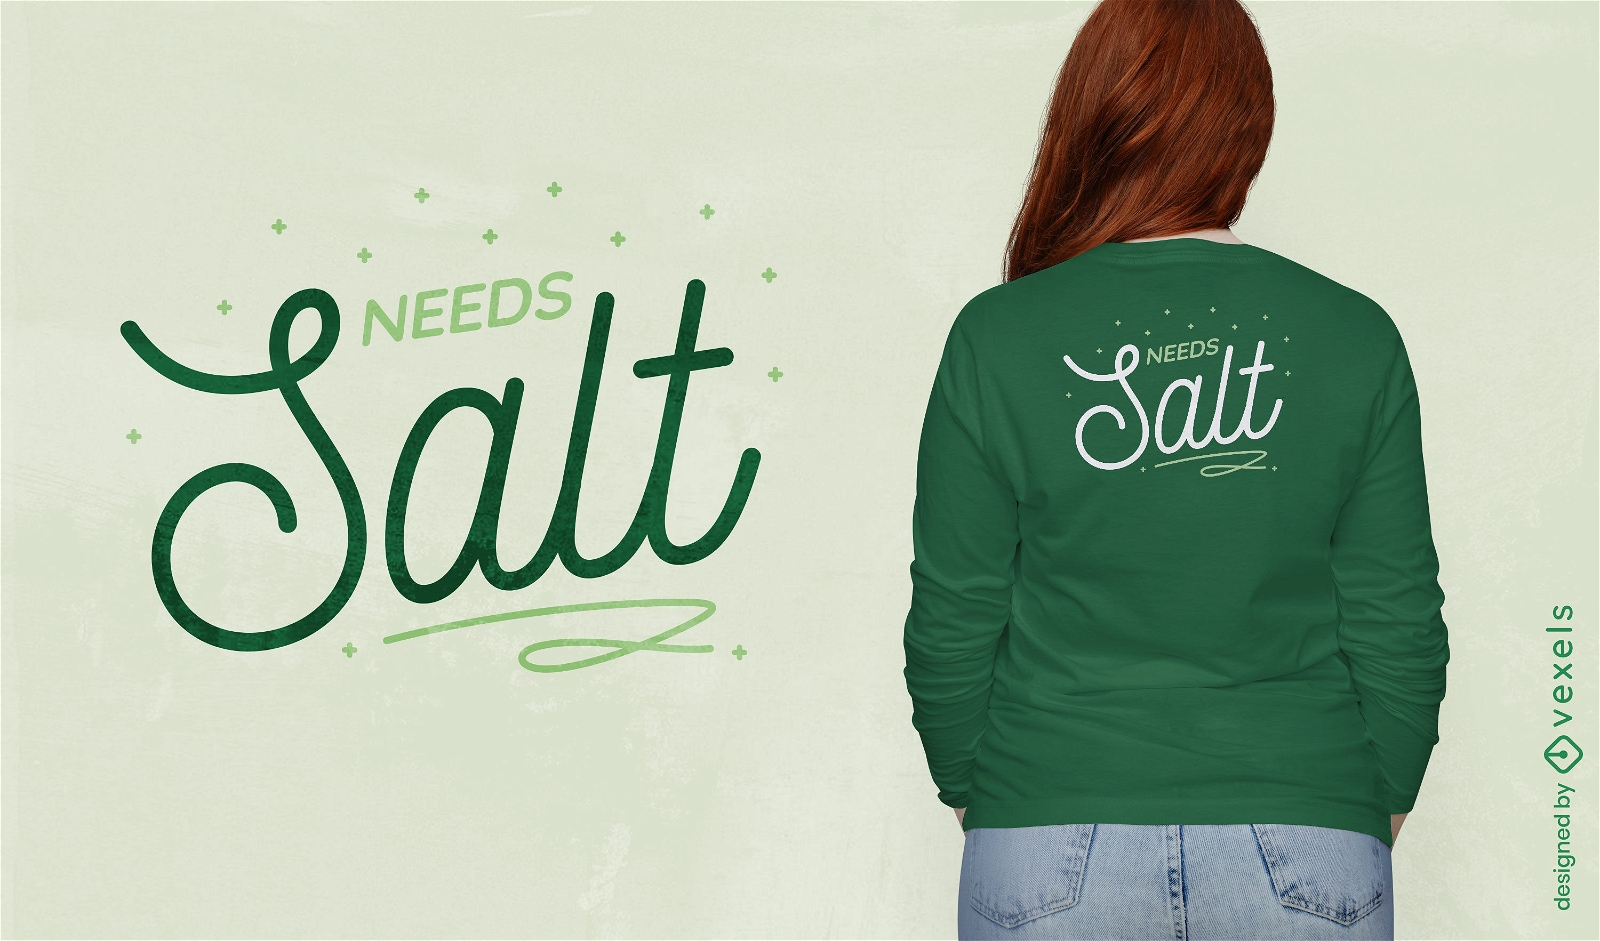 Ben?tigt Salz, das Zitat-T-Shirt-Design kocht